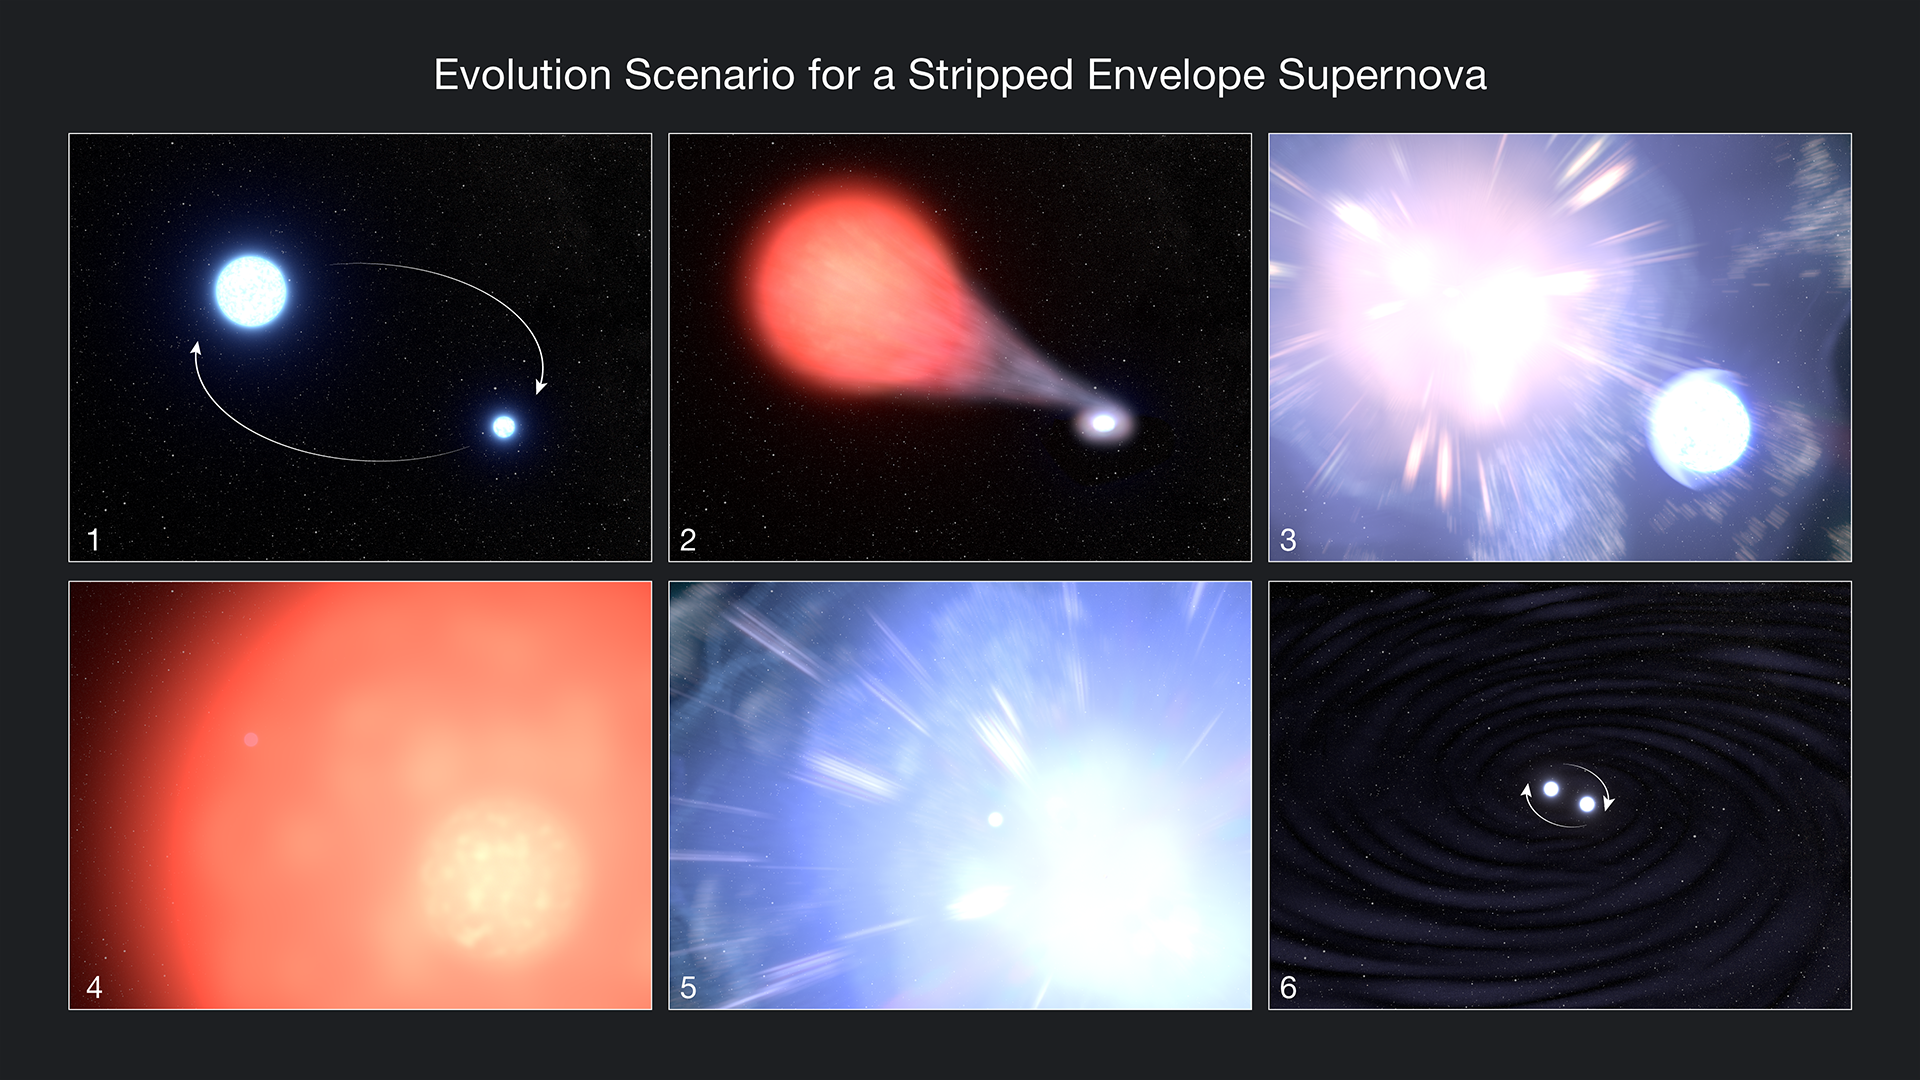 Uma estrela companheira de supernova recém-descoberta pode provar que as teorias de Einstein estão corretas